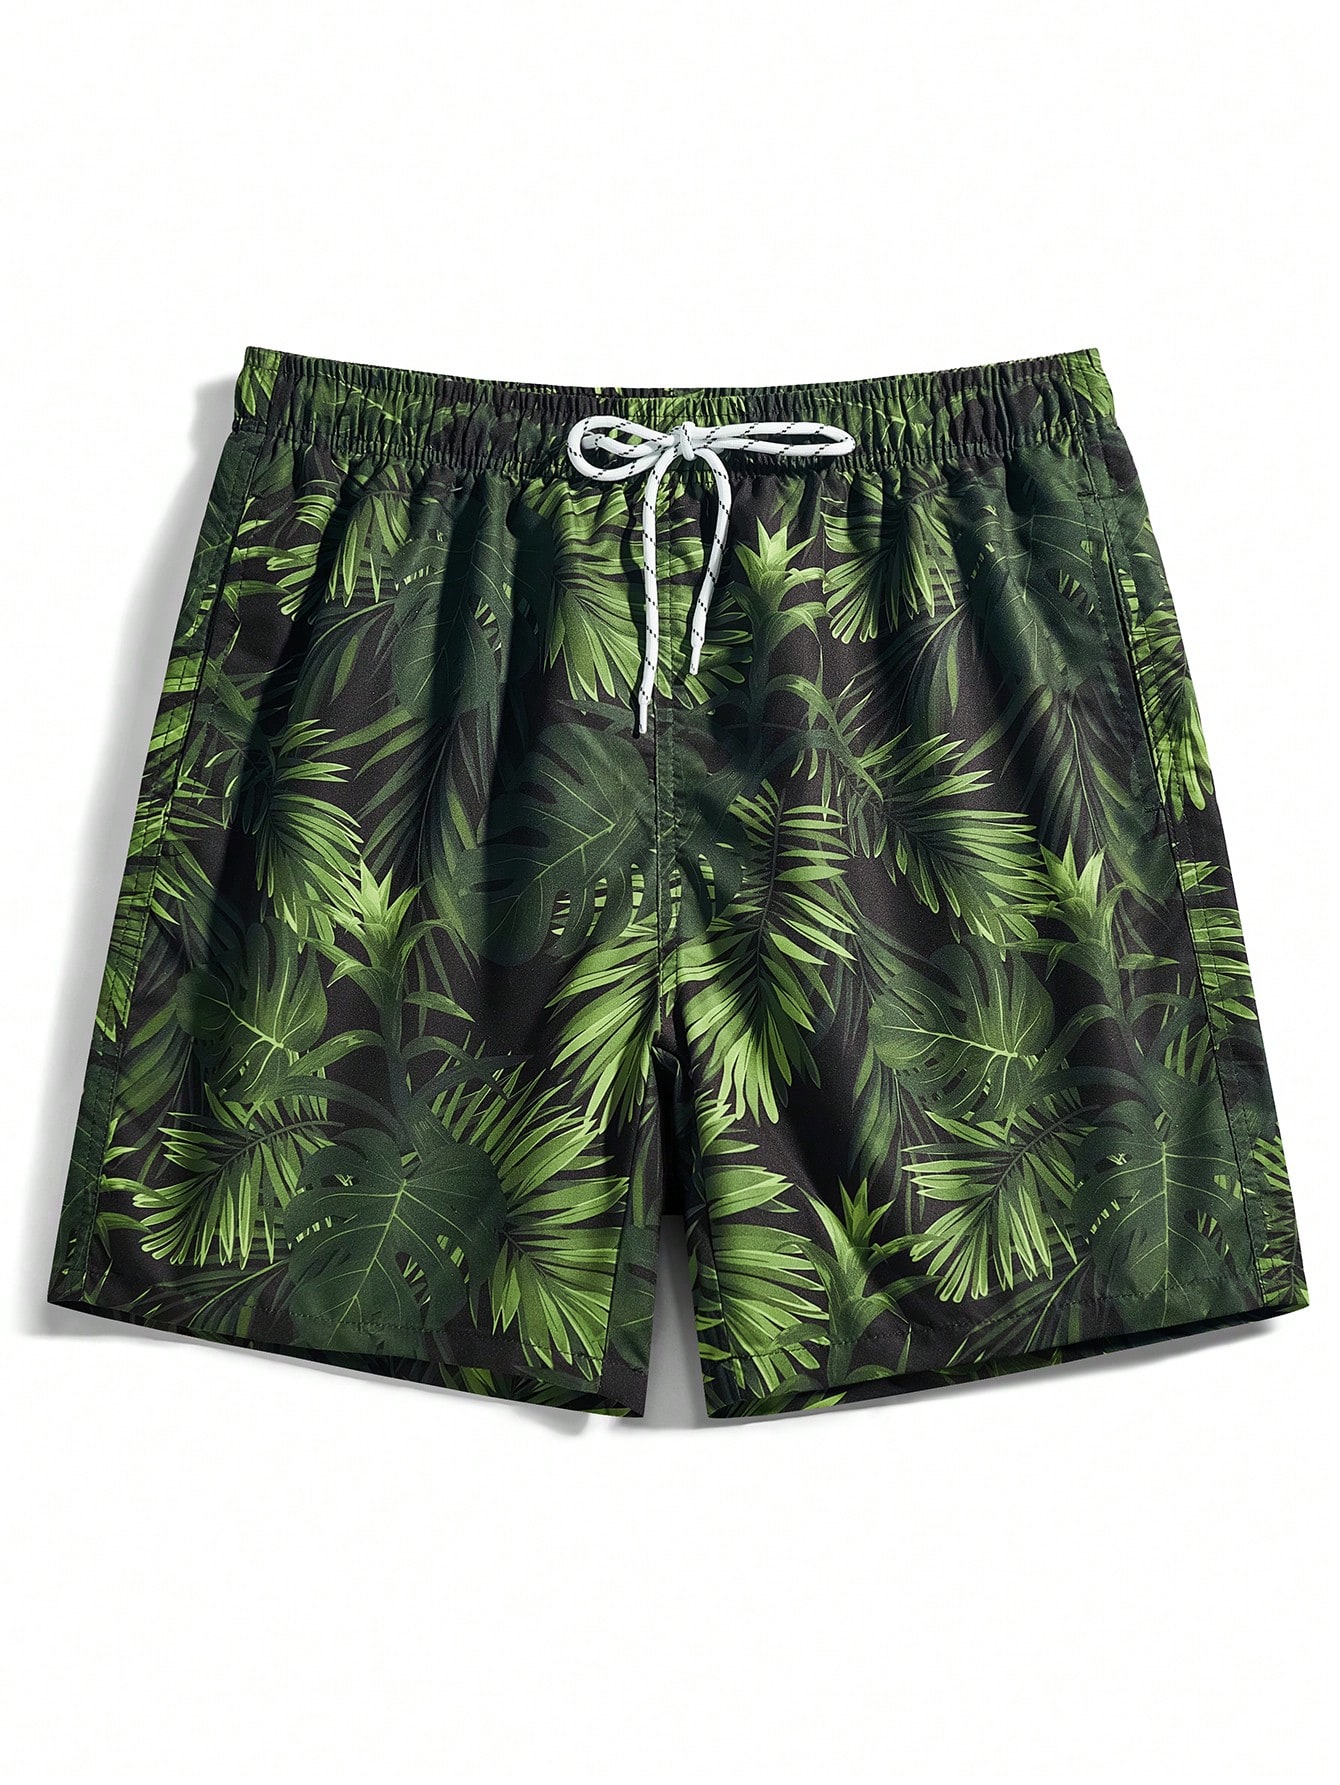 Мужские пляжные шорты Manfinity с тропическим принтом и завязками на талии, армейский зеленый шорты пляжные мужские termit зеленый